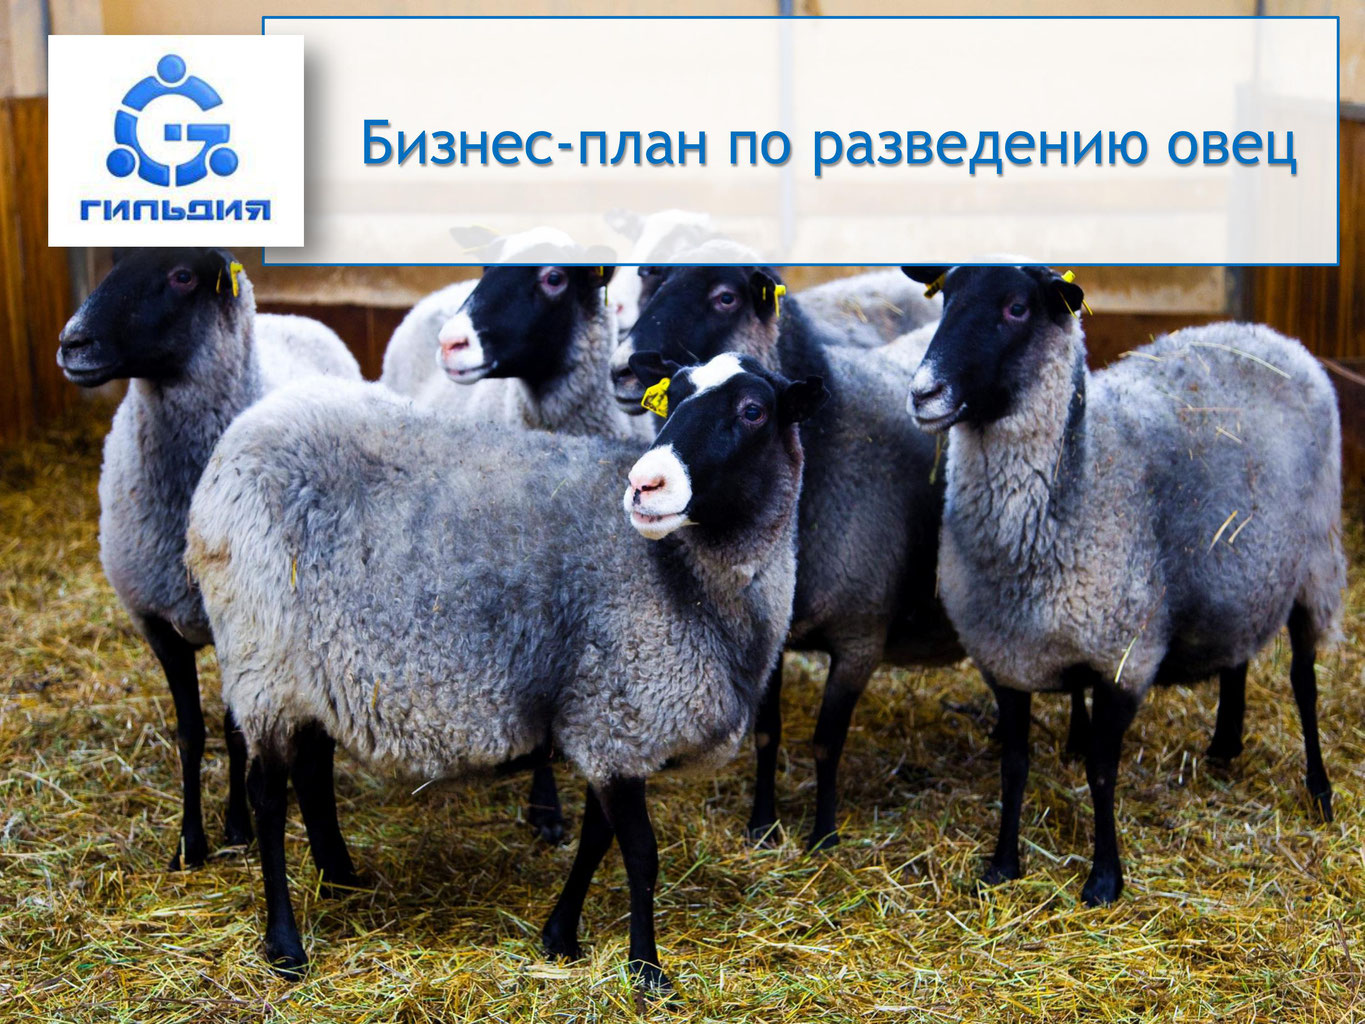 Разведение овец как бизнес — 2021 портал делового мира koordynator.info